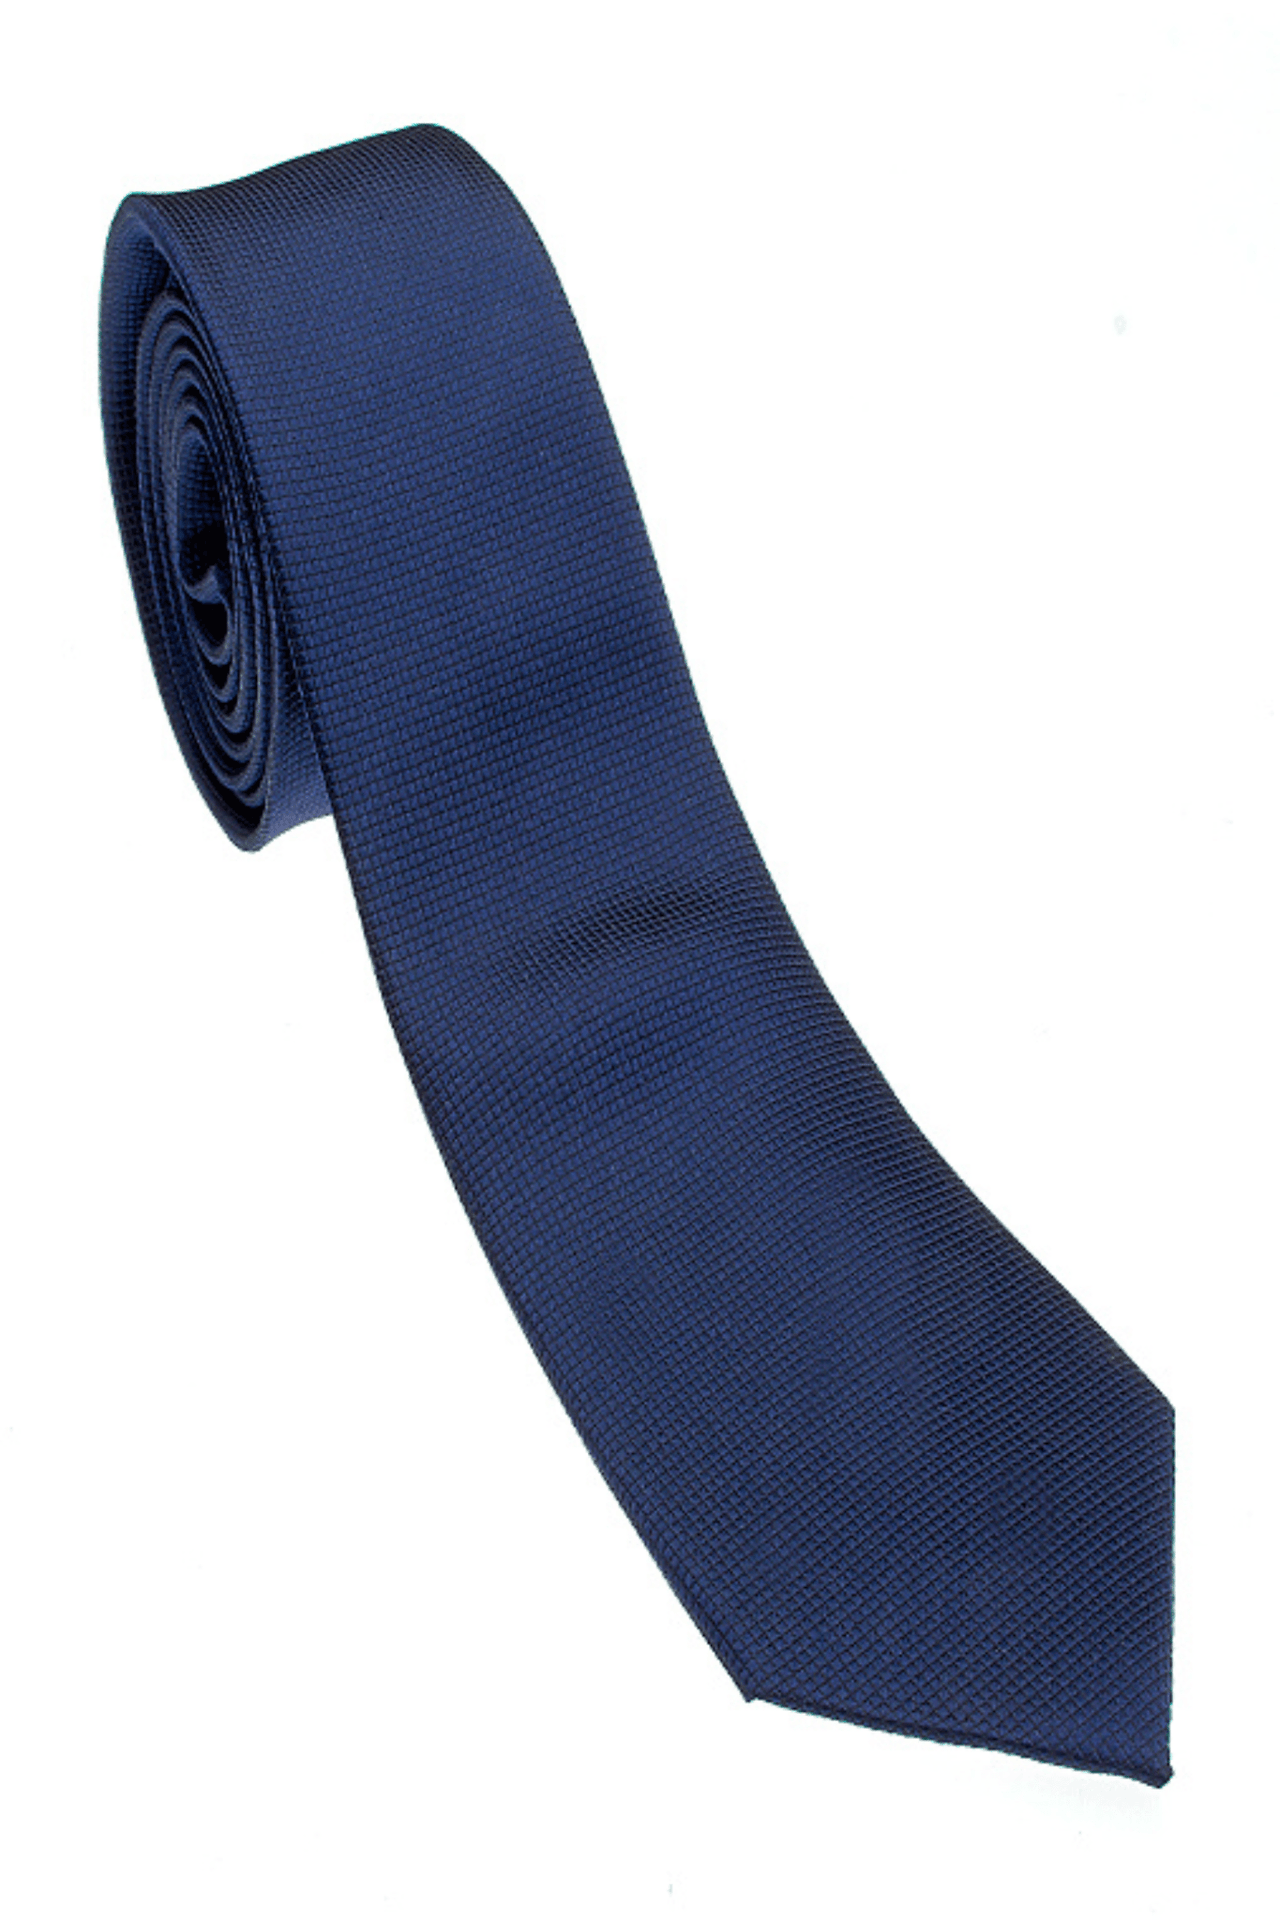 100% Woven Silk Dark Blue Tie - Tomasso Black